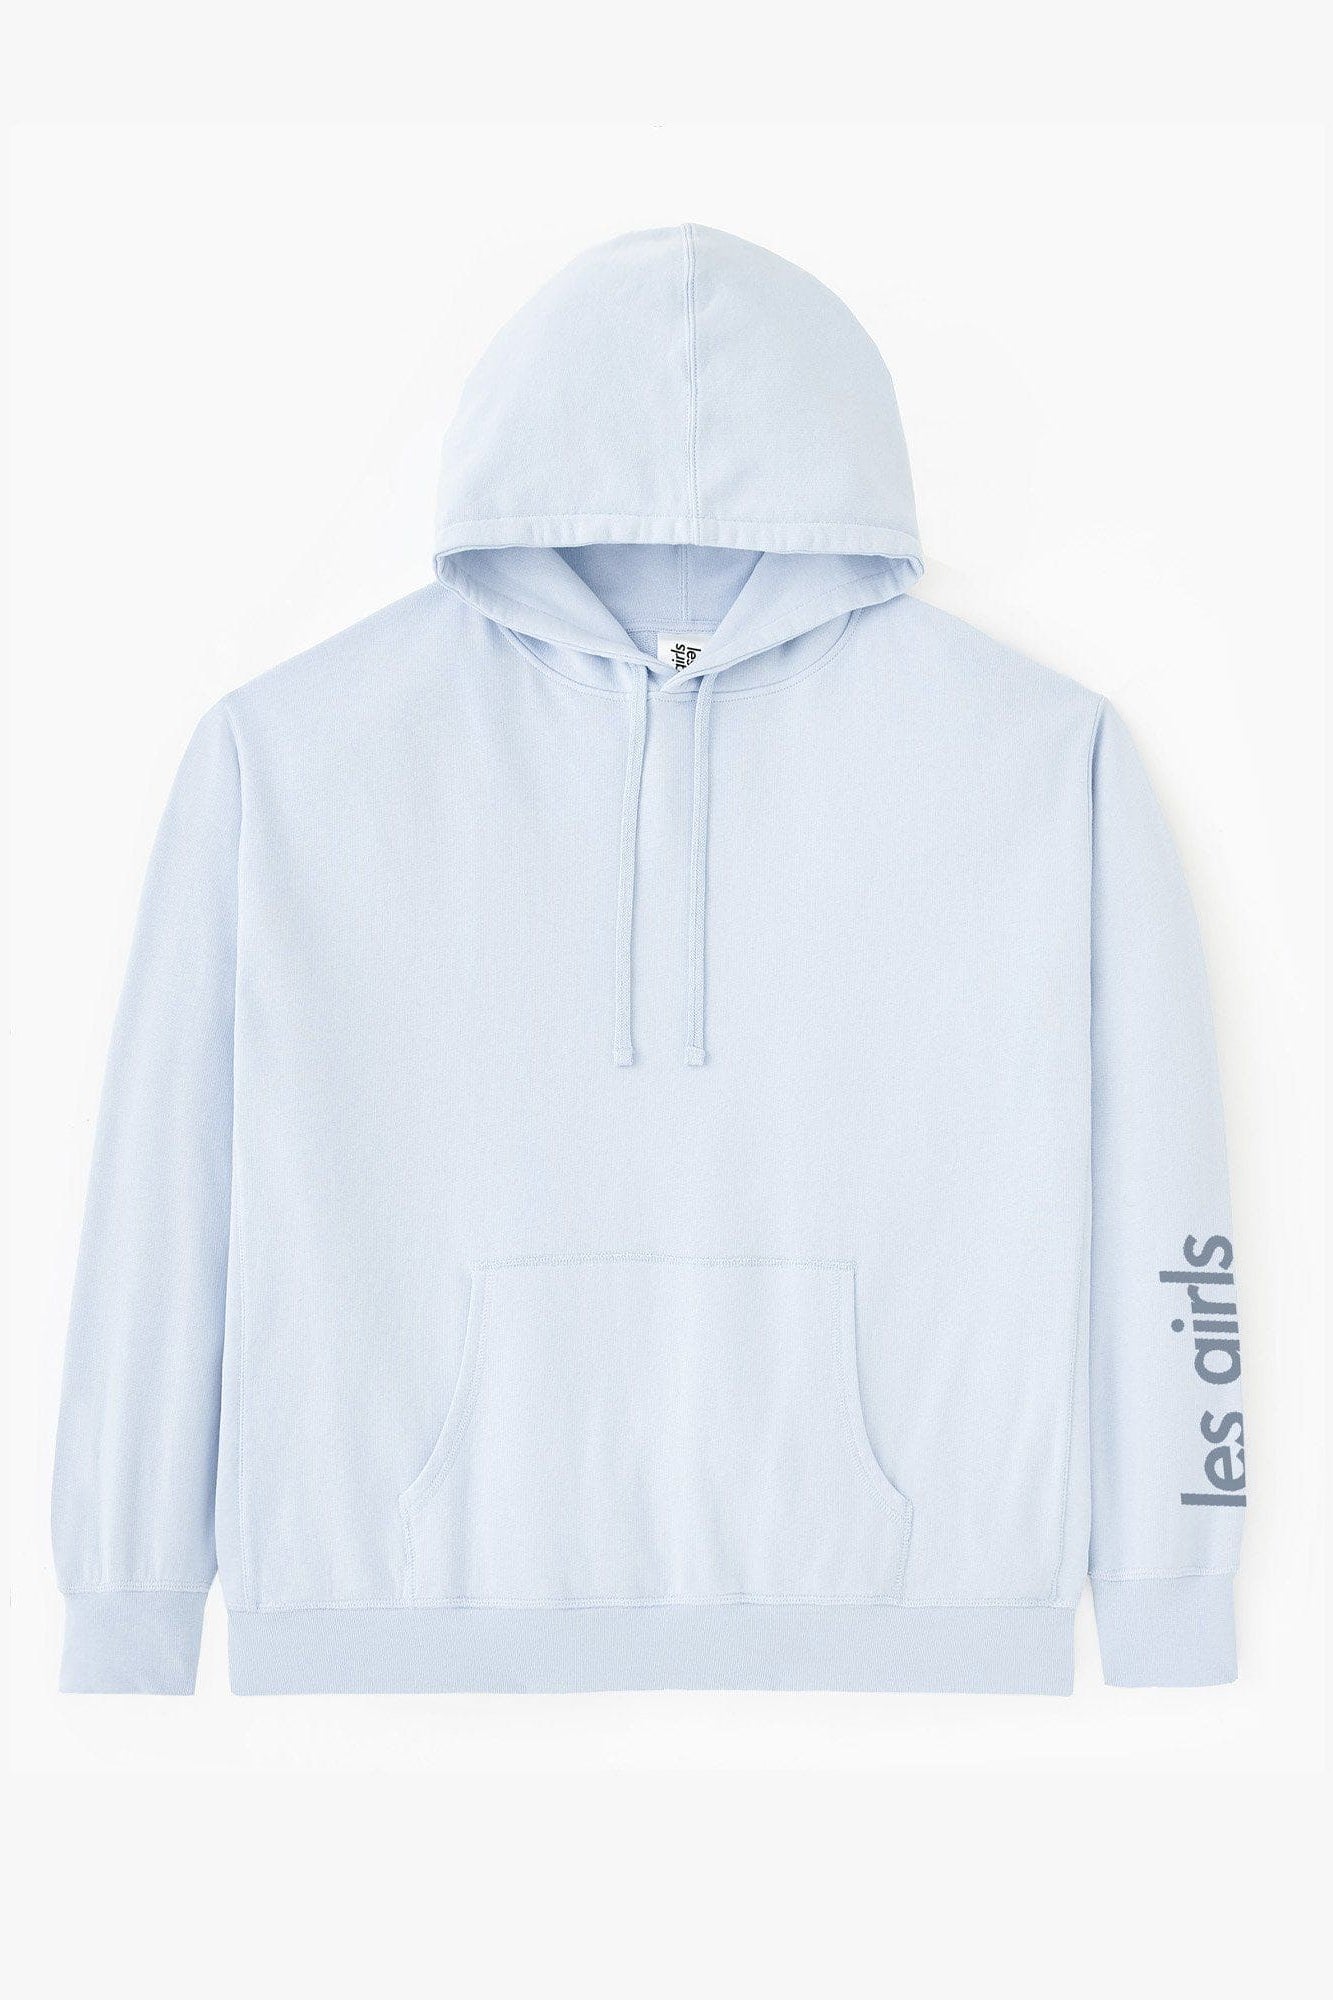 ultimate-fit-sweats-hoodie-13